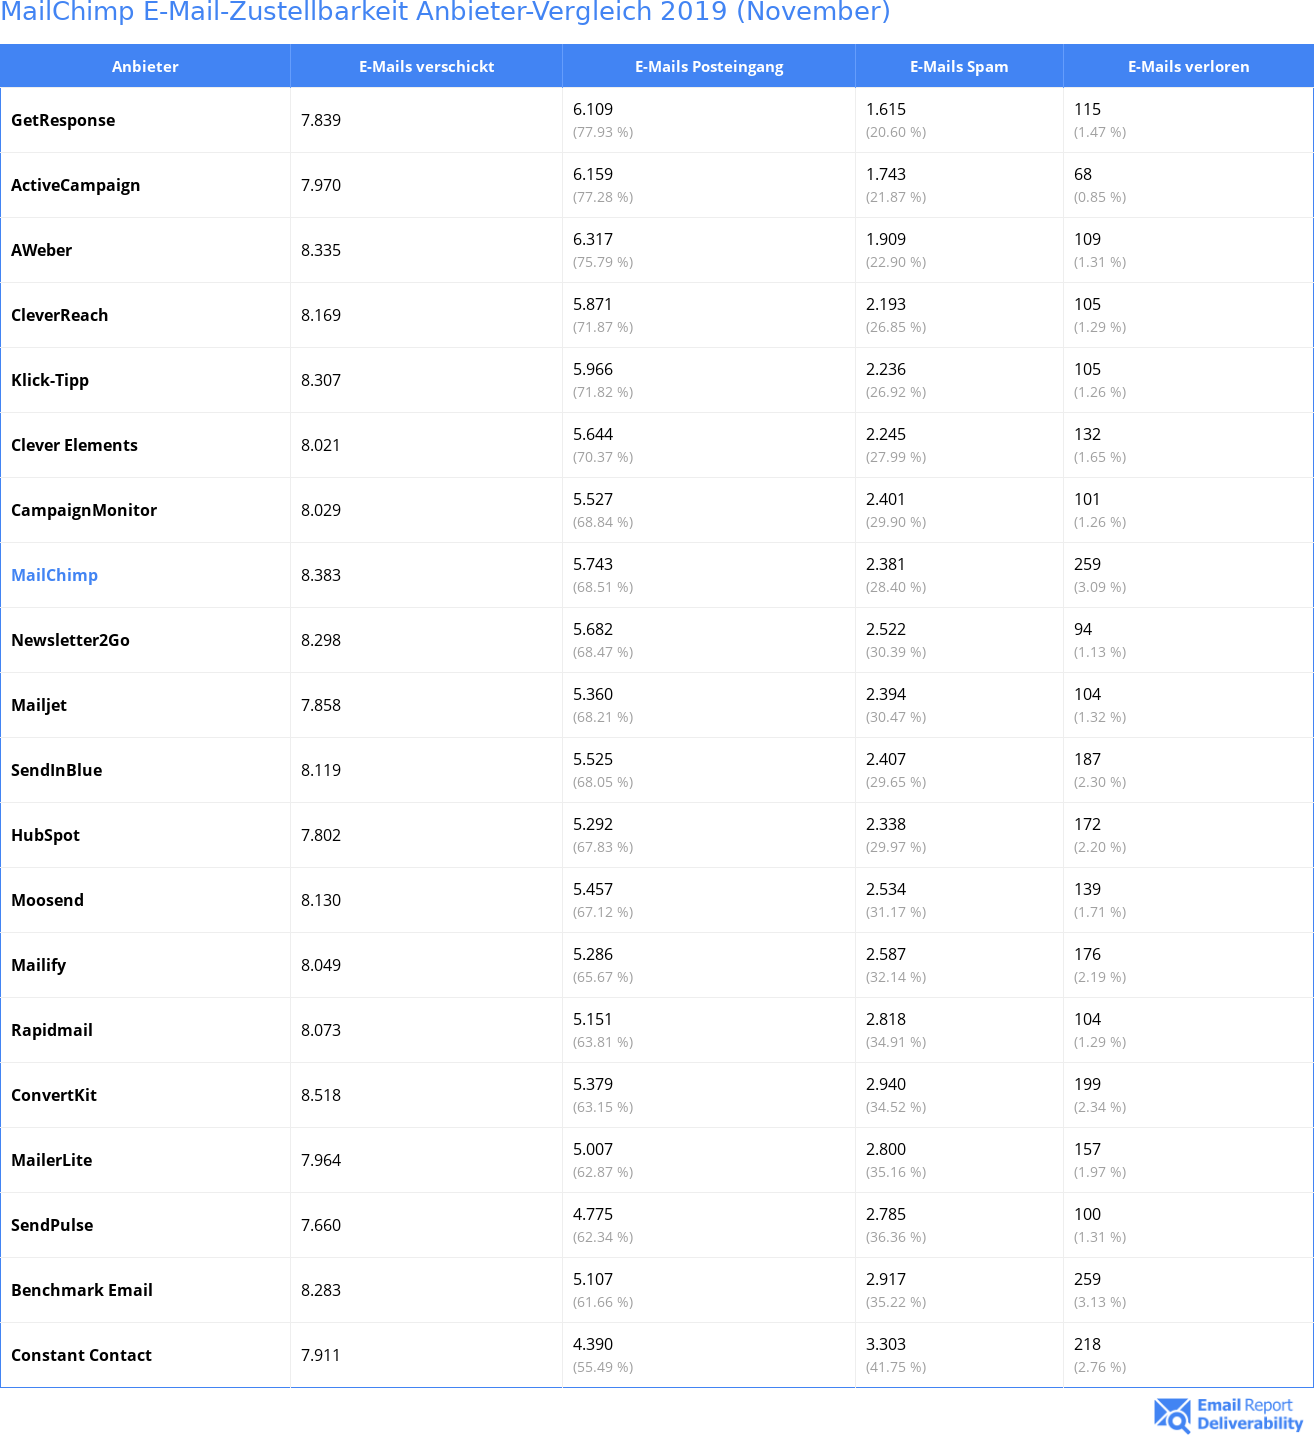 MailChimp E-Mail-Zustellbarkeit Anbieter-Vergleich 2019 (November)